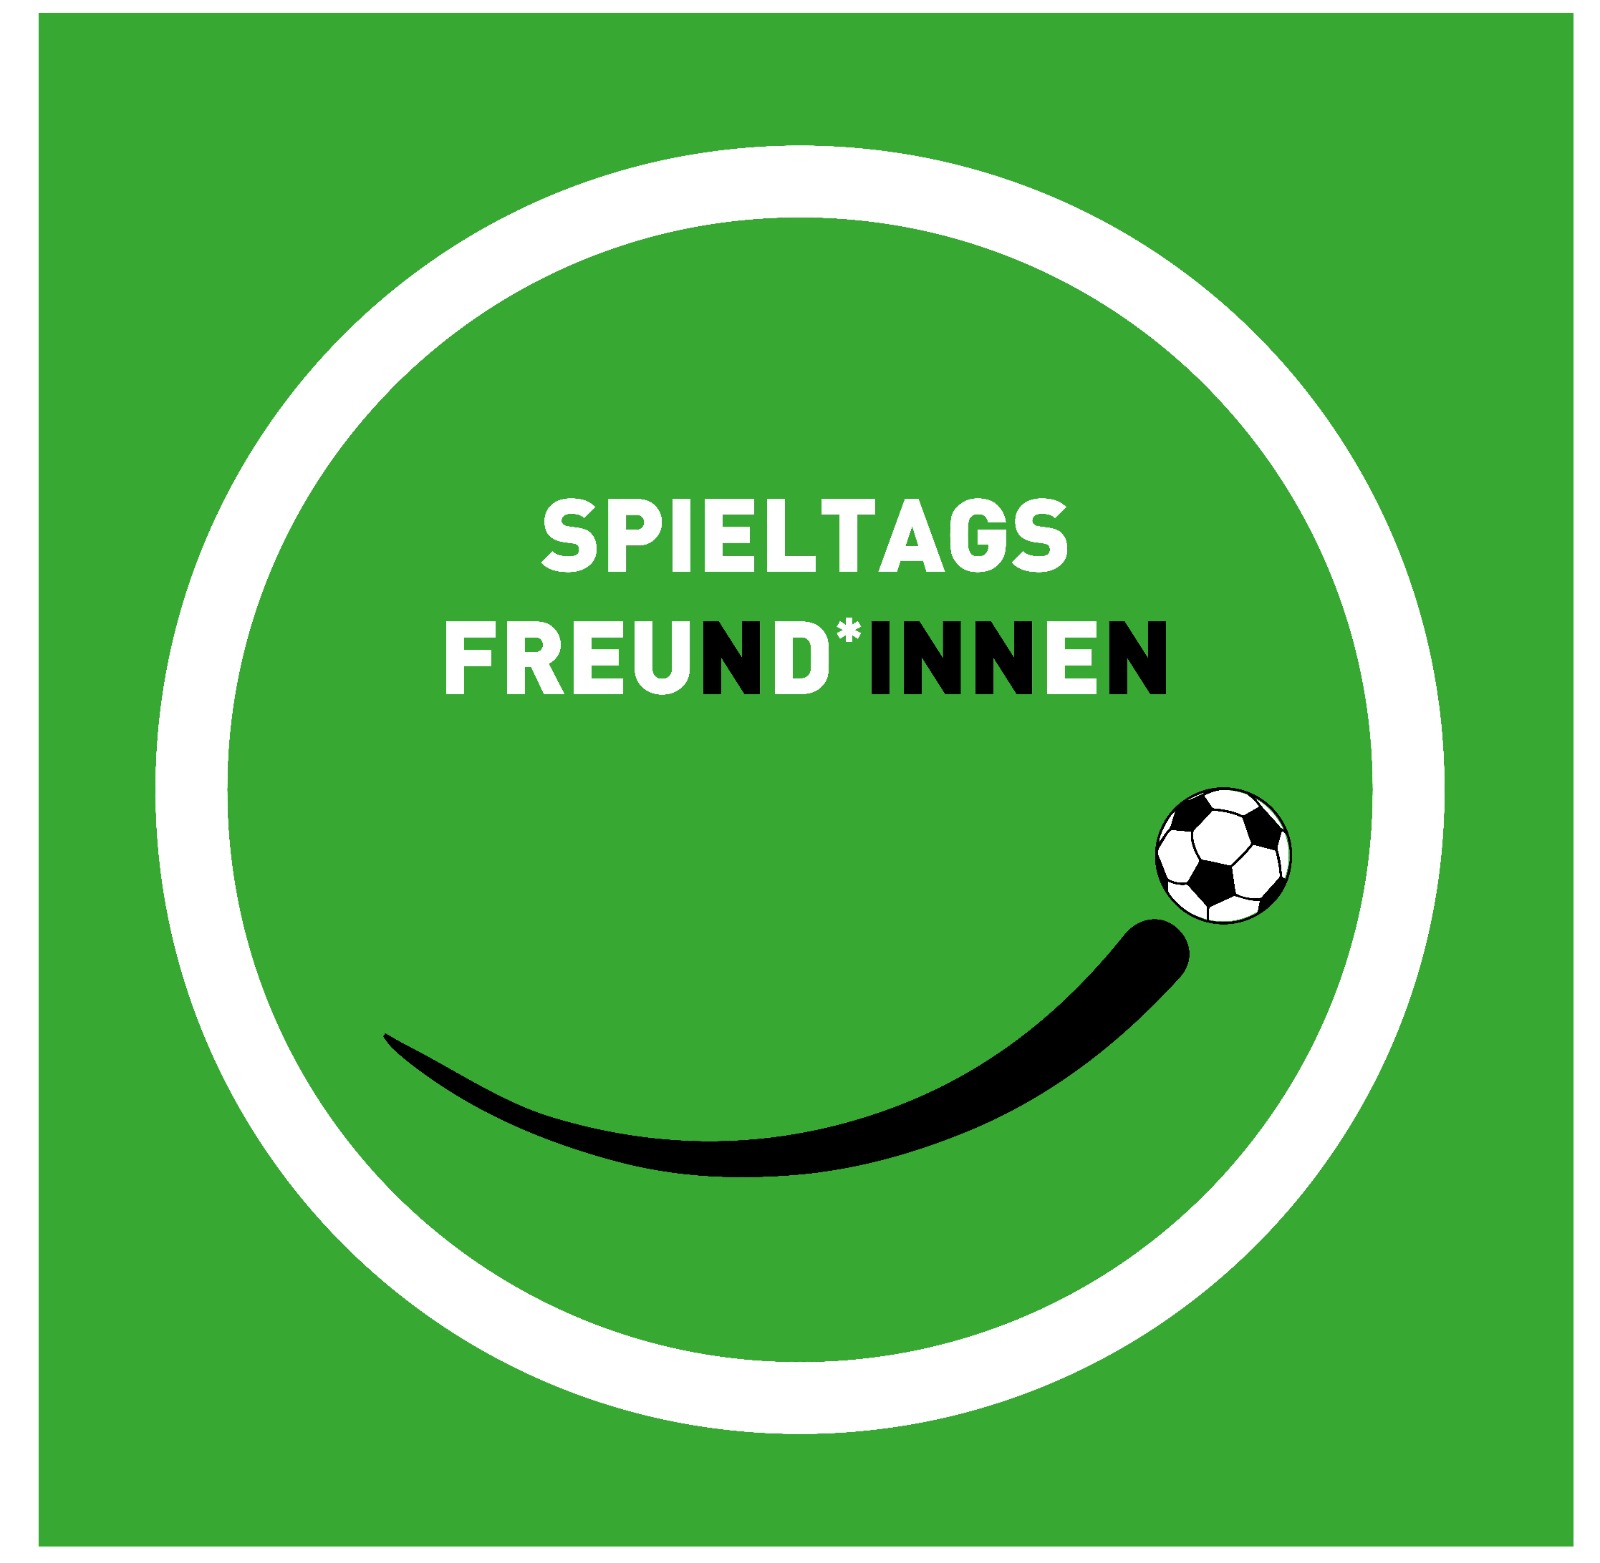 Logo Spieltagsfreund*innen. Weißer Smiley mit schwarzem Mund und Fußball auf grünen Hintergrund.